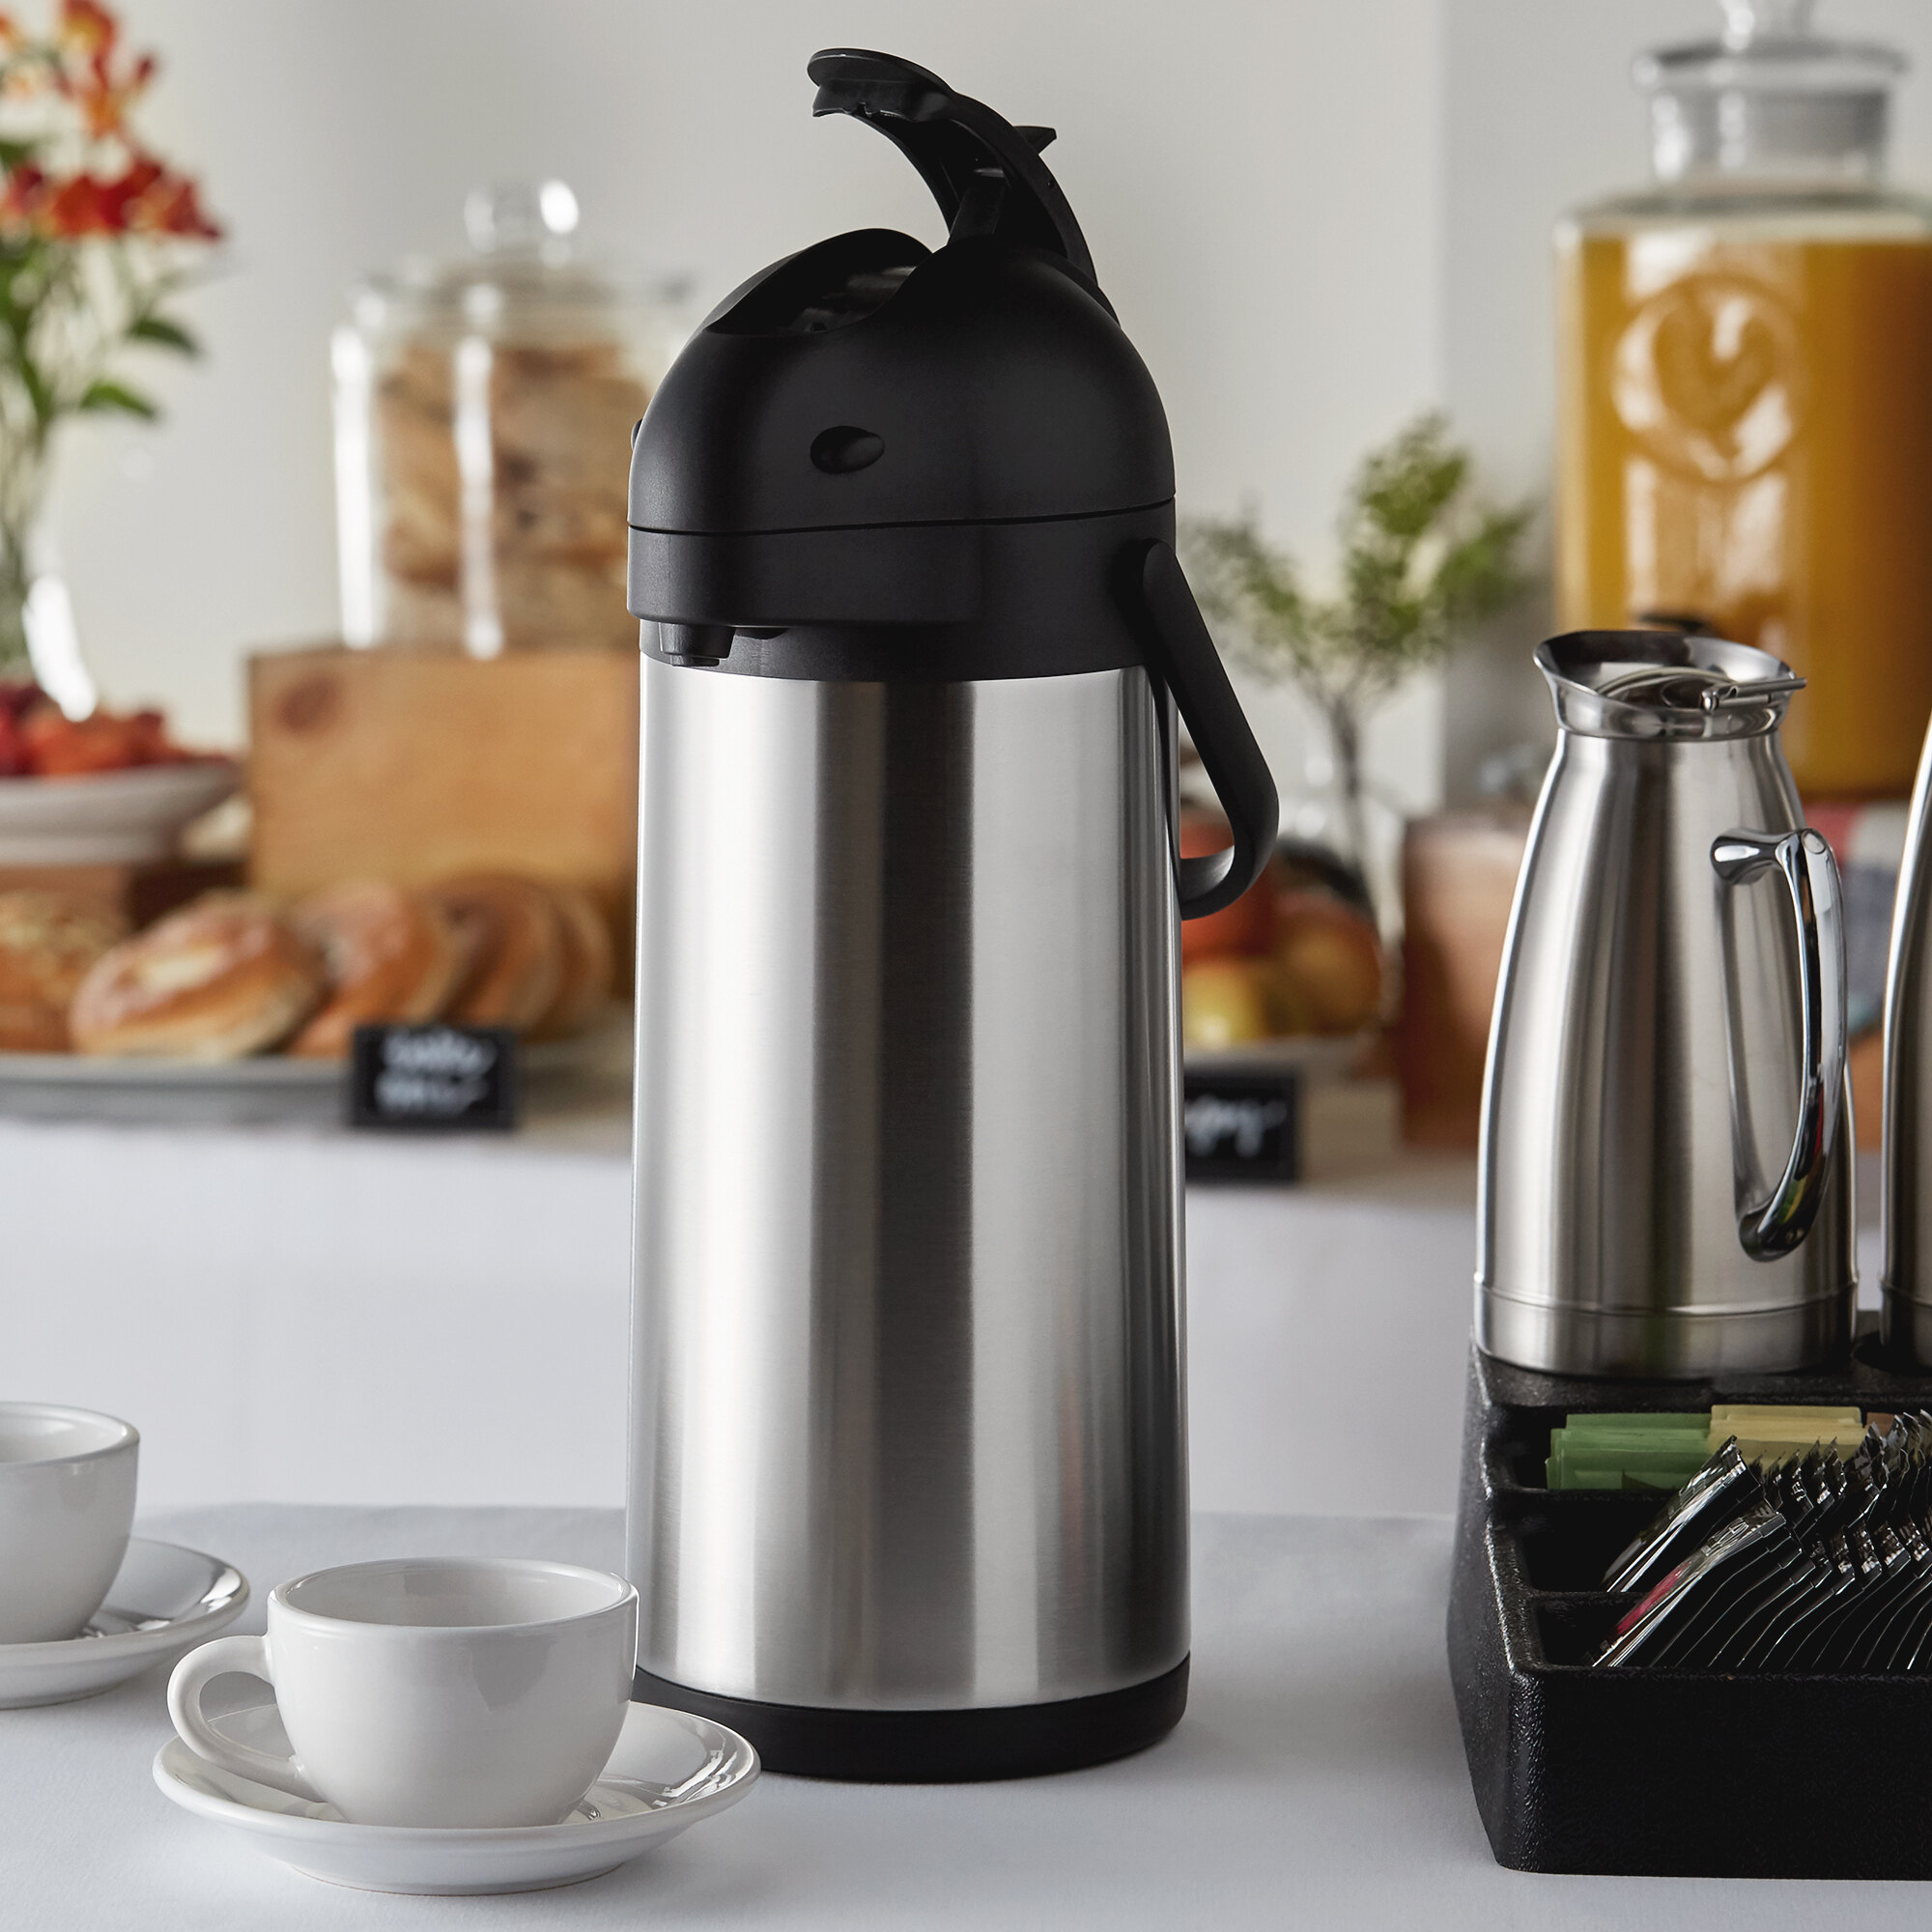 Stainless Steel Coffee Airpot - 3 Liter | WebstaurantStore